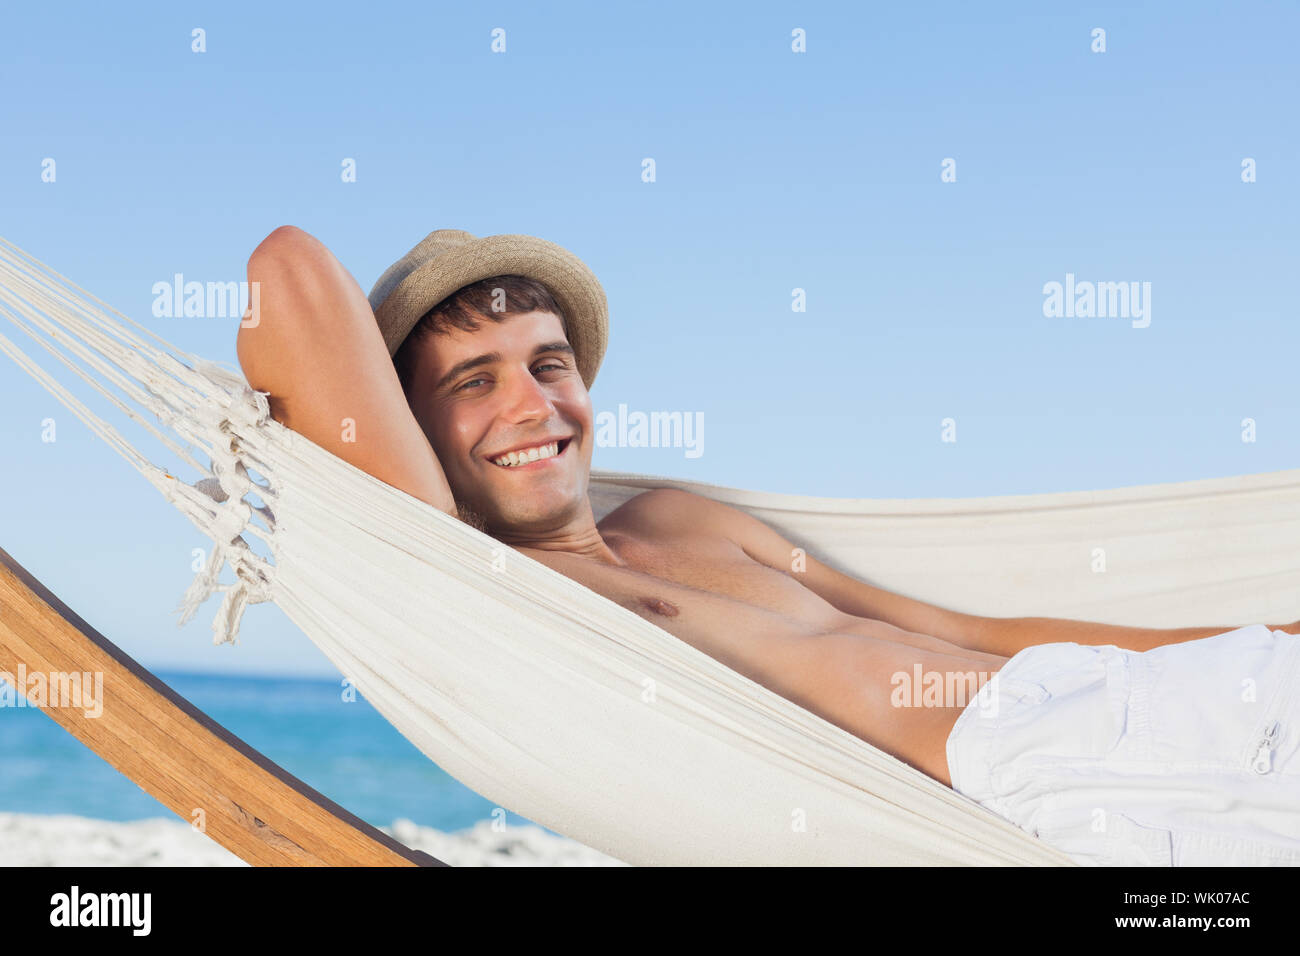 Hombre Con El Sombrero En La Playa Imagen de archivo - Imagen de cristales,  calor: 7631953